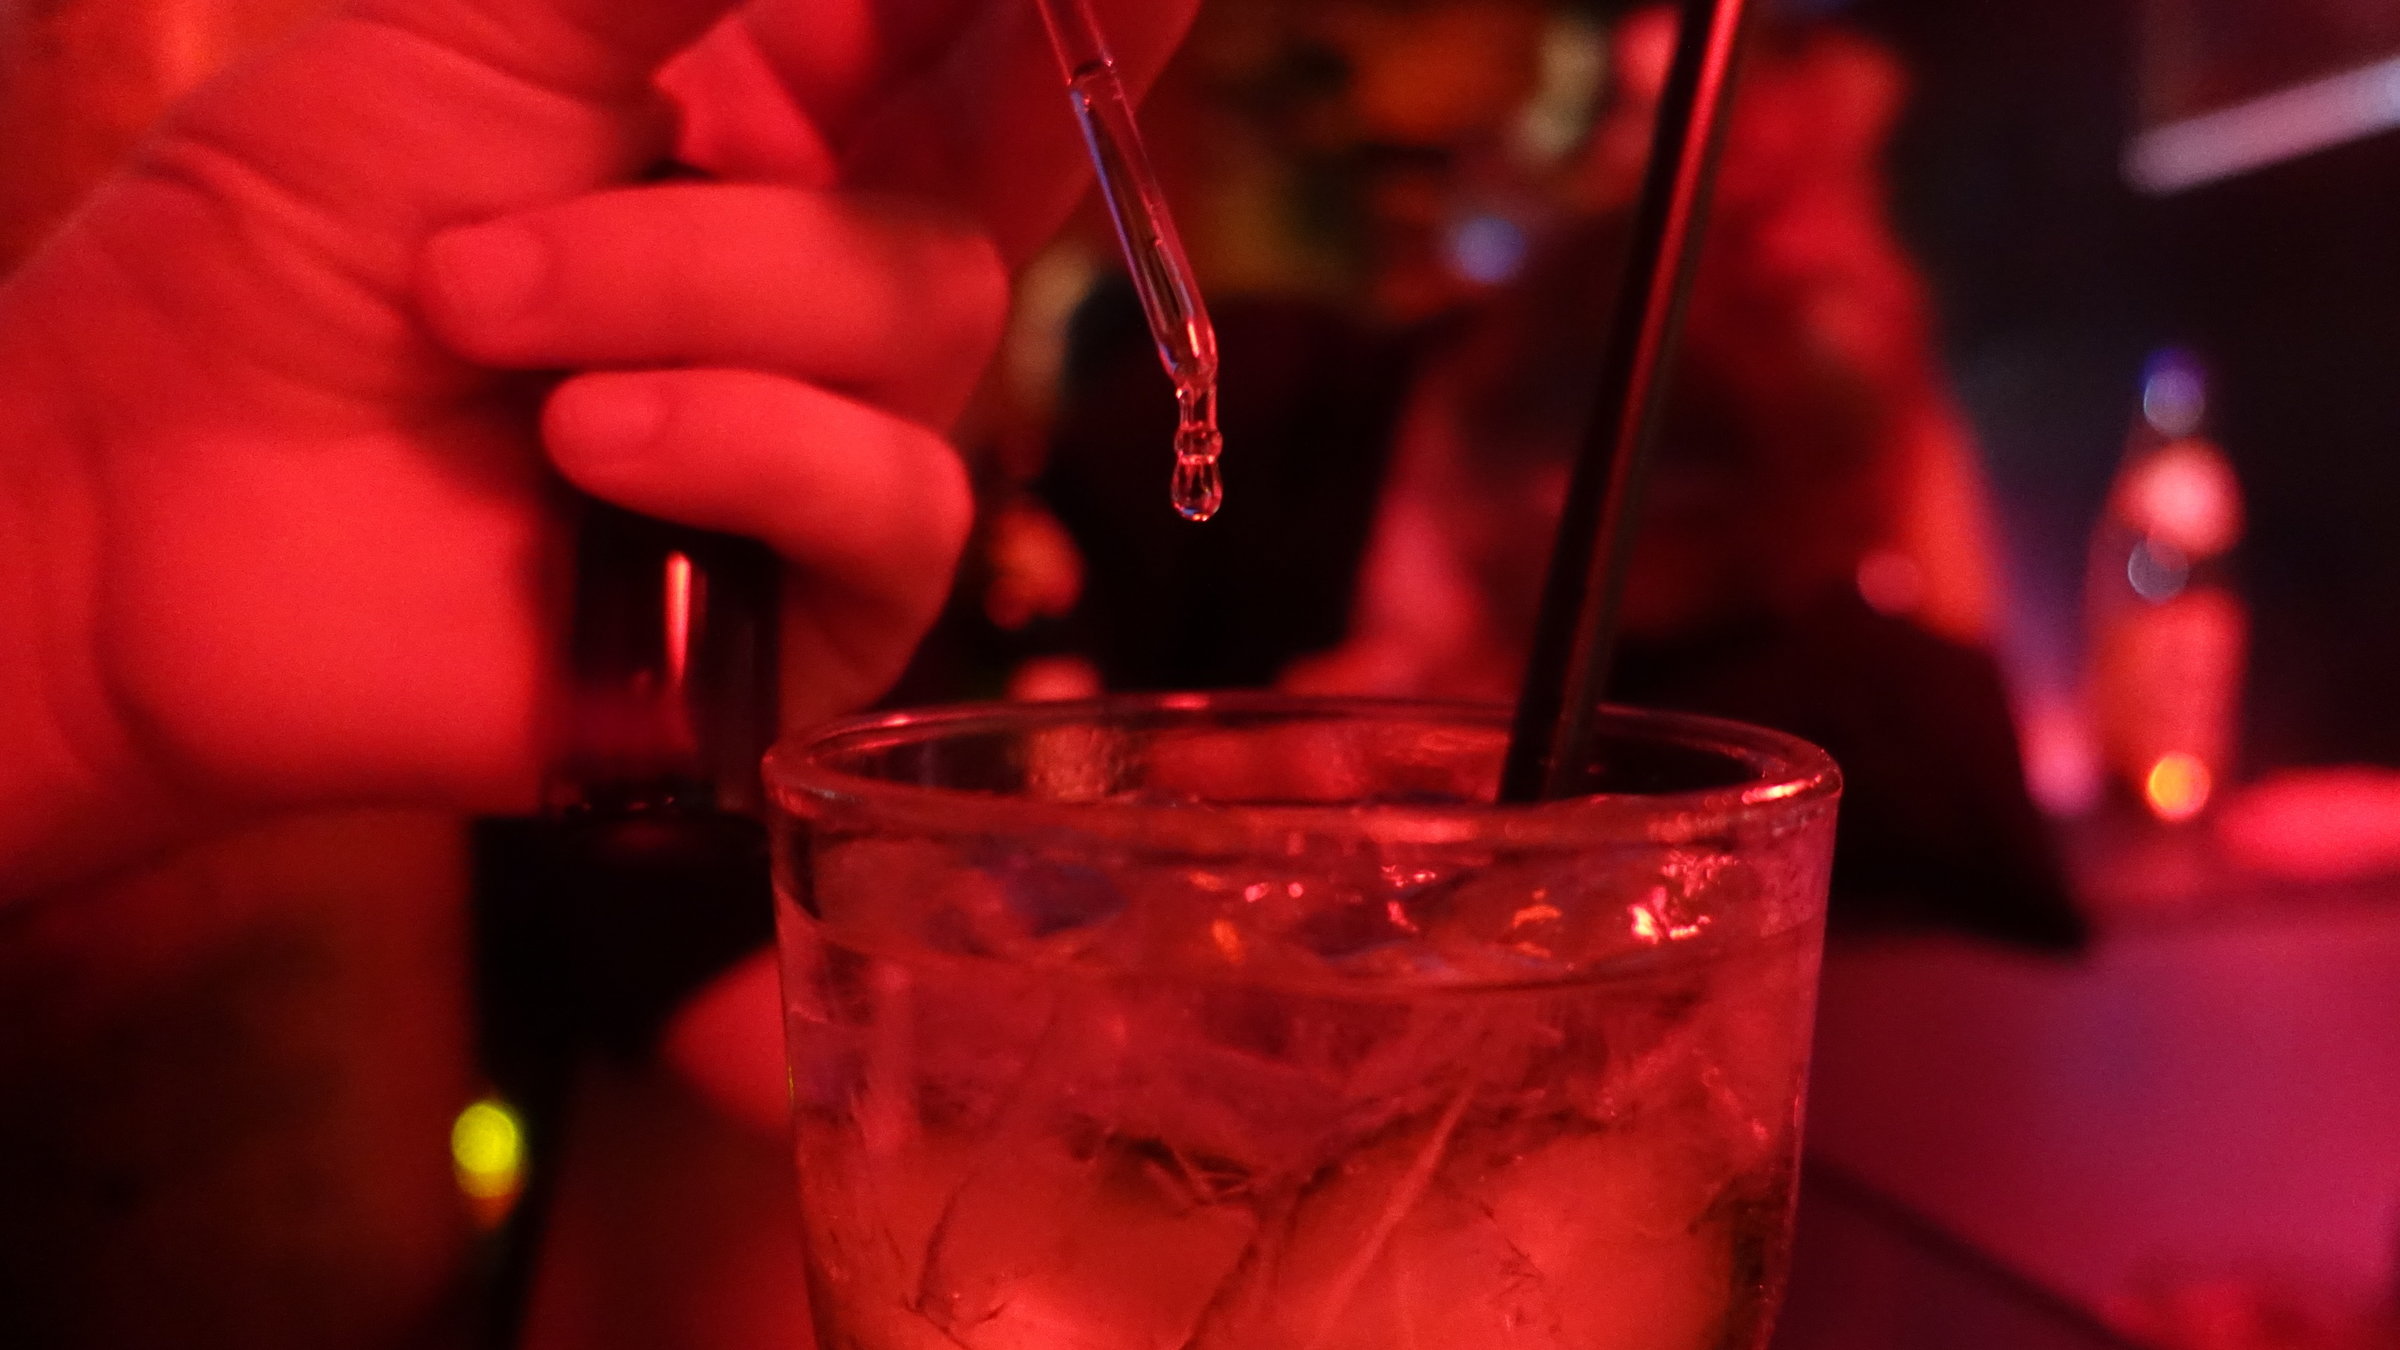 "37°: K.o. getropft - Leben nach dem Filmriss": Spielszene in einer Bar: Die rote Beleuchtung taucht die Bar in eine mystisch-schummrige Stimmung. Jemand träufelt mit einer Pipette Tropfen in ein gefülltes Glas.